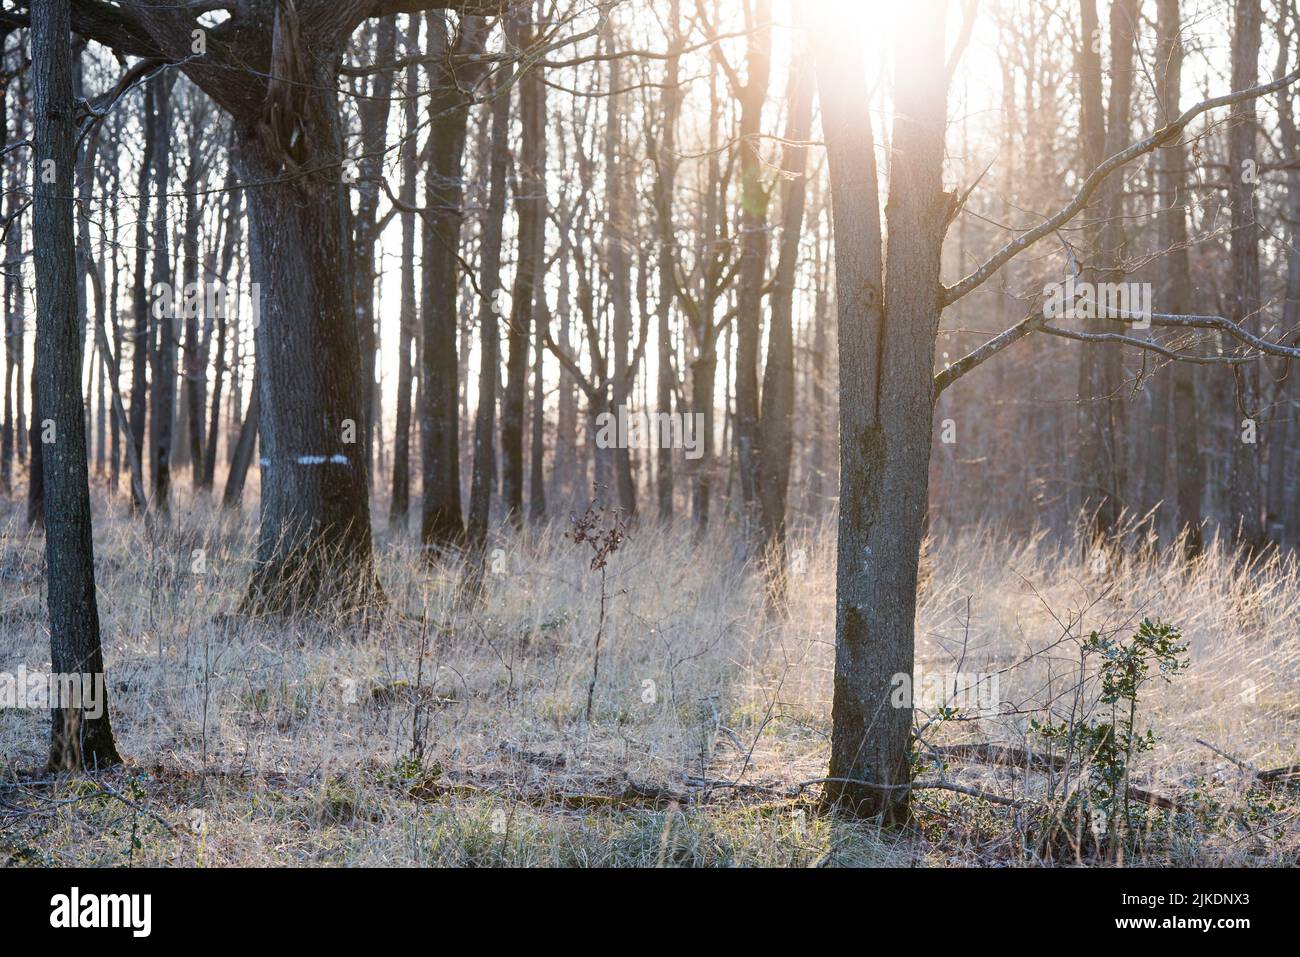 Maleza hierba, Bosque de Rambouillet, Parque Natural Regional Haute Vallee de Chevreuse, departamento de Yvelines, región Ile-de-France, Francia, Europa. Foto de stock